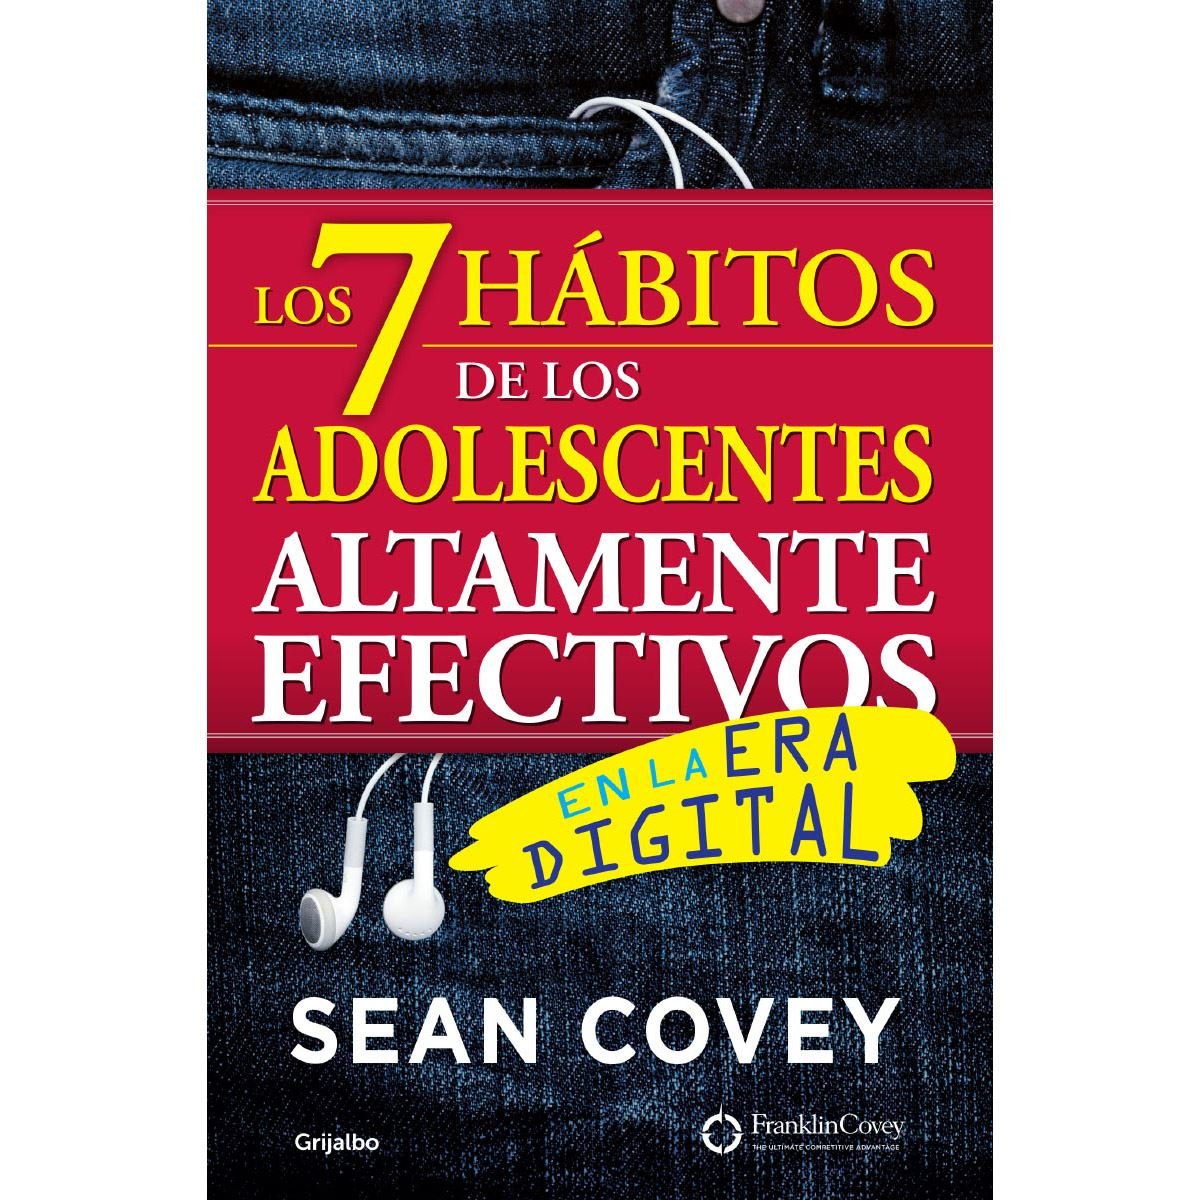 Los 7 hábitos de los adolescentes altamente efectivos (Nueva Edición)